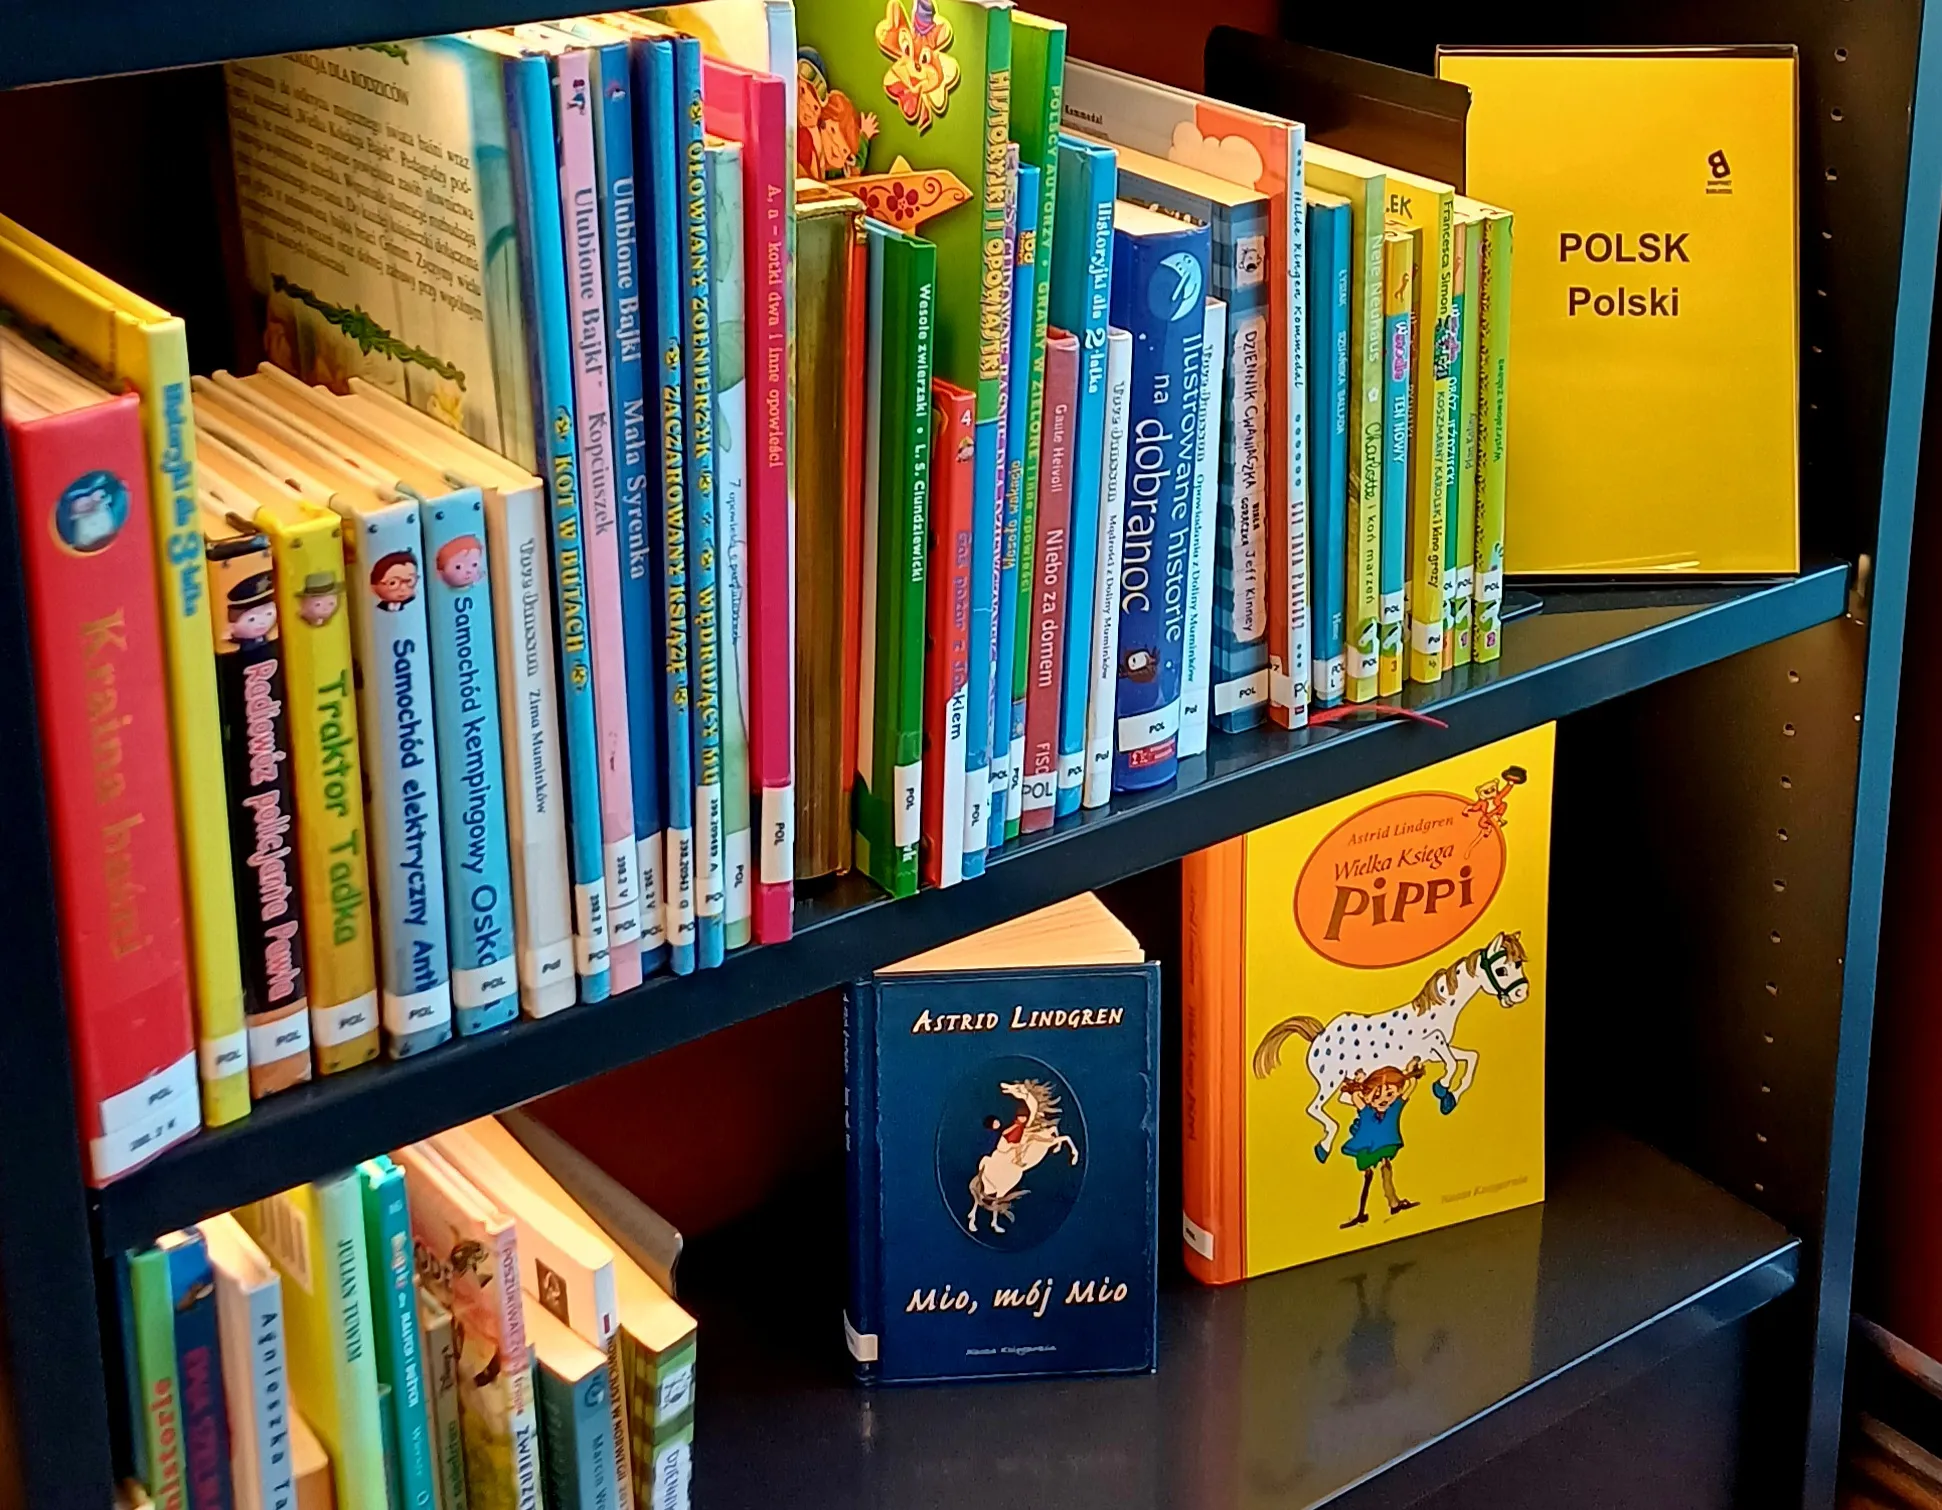 Книги польською мовою в Норвезькій бібліотеці: багатомовна бібліотека, доступна кожному